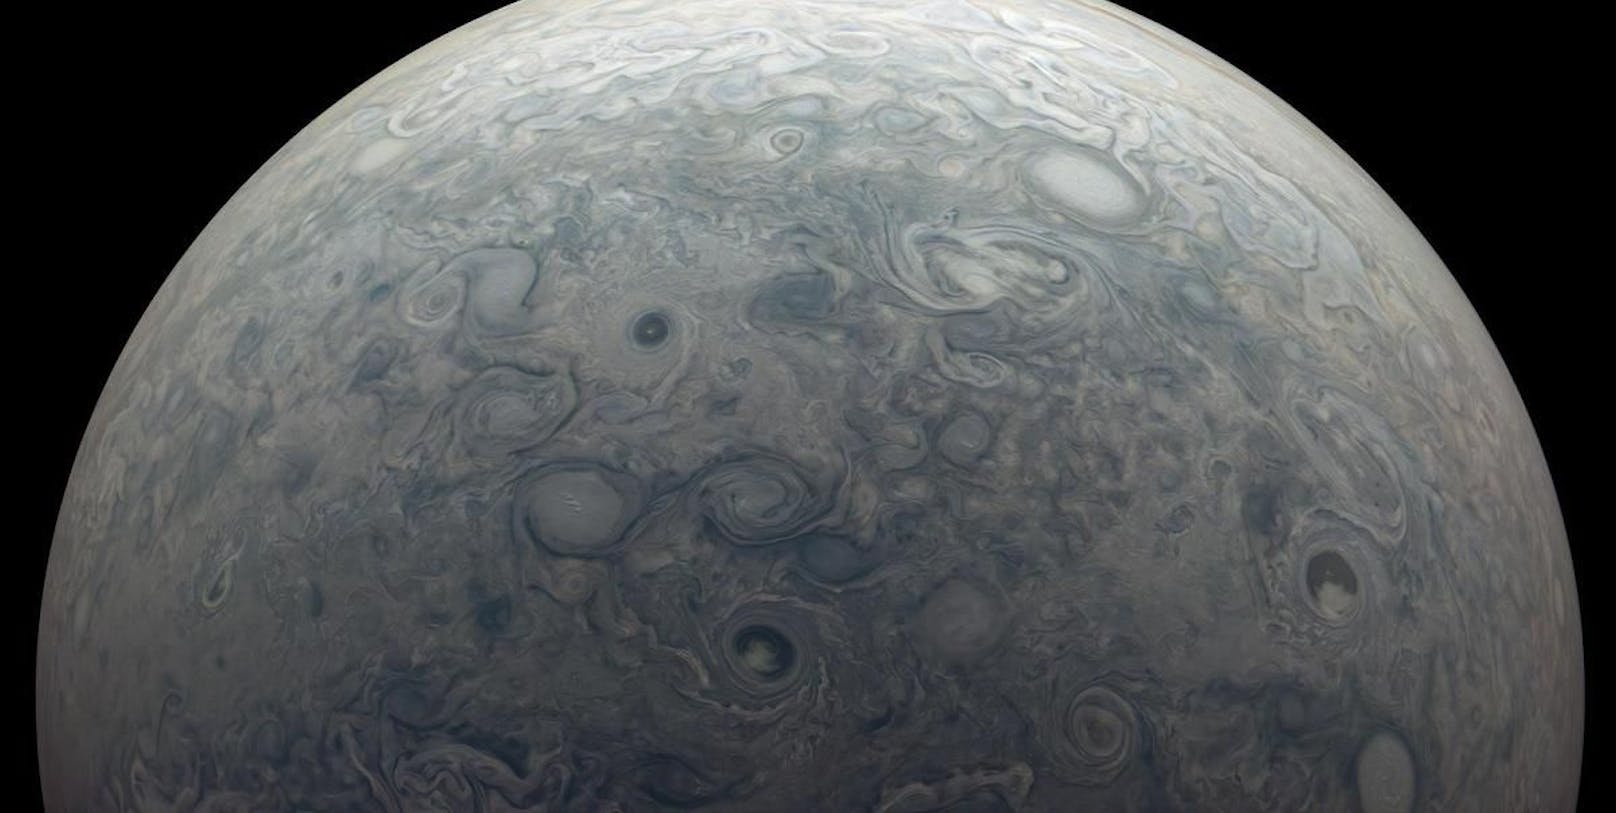 Auch diese Aufnahme ist von Juno. Sie zeigt die nördliche Hemisphäre von Jupiter.